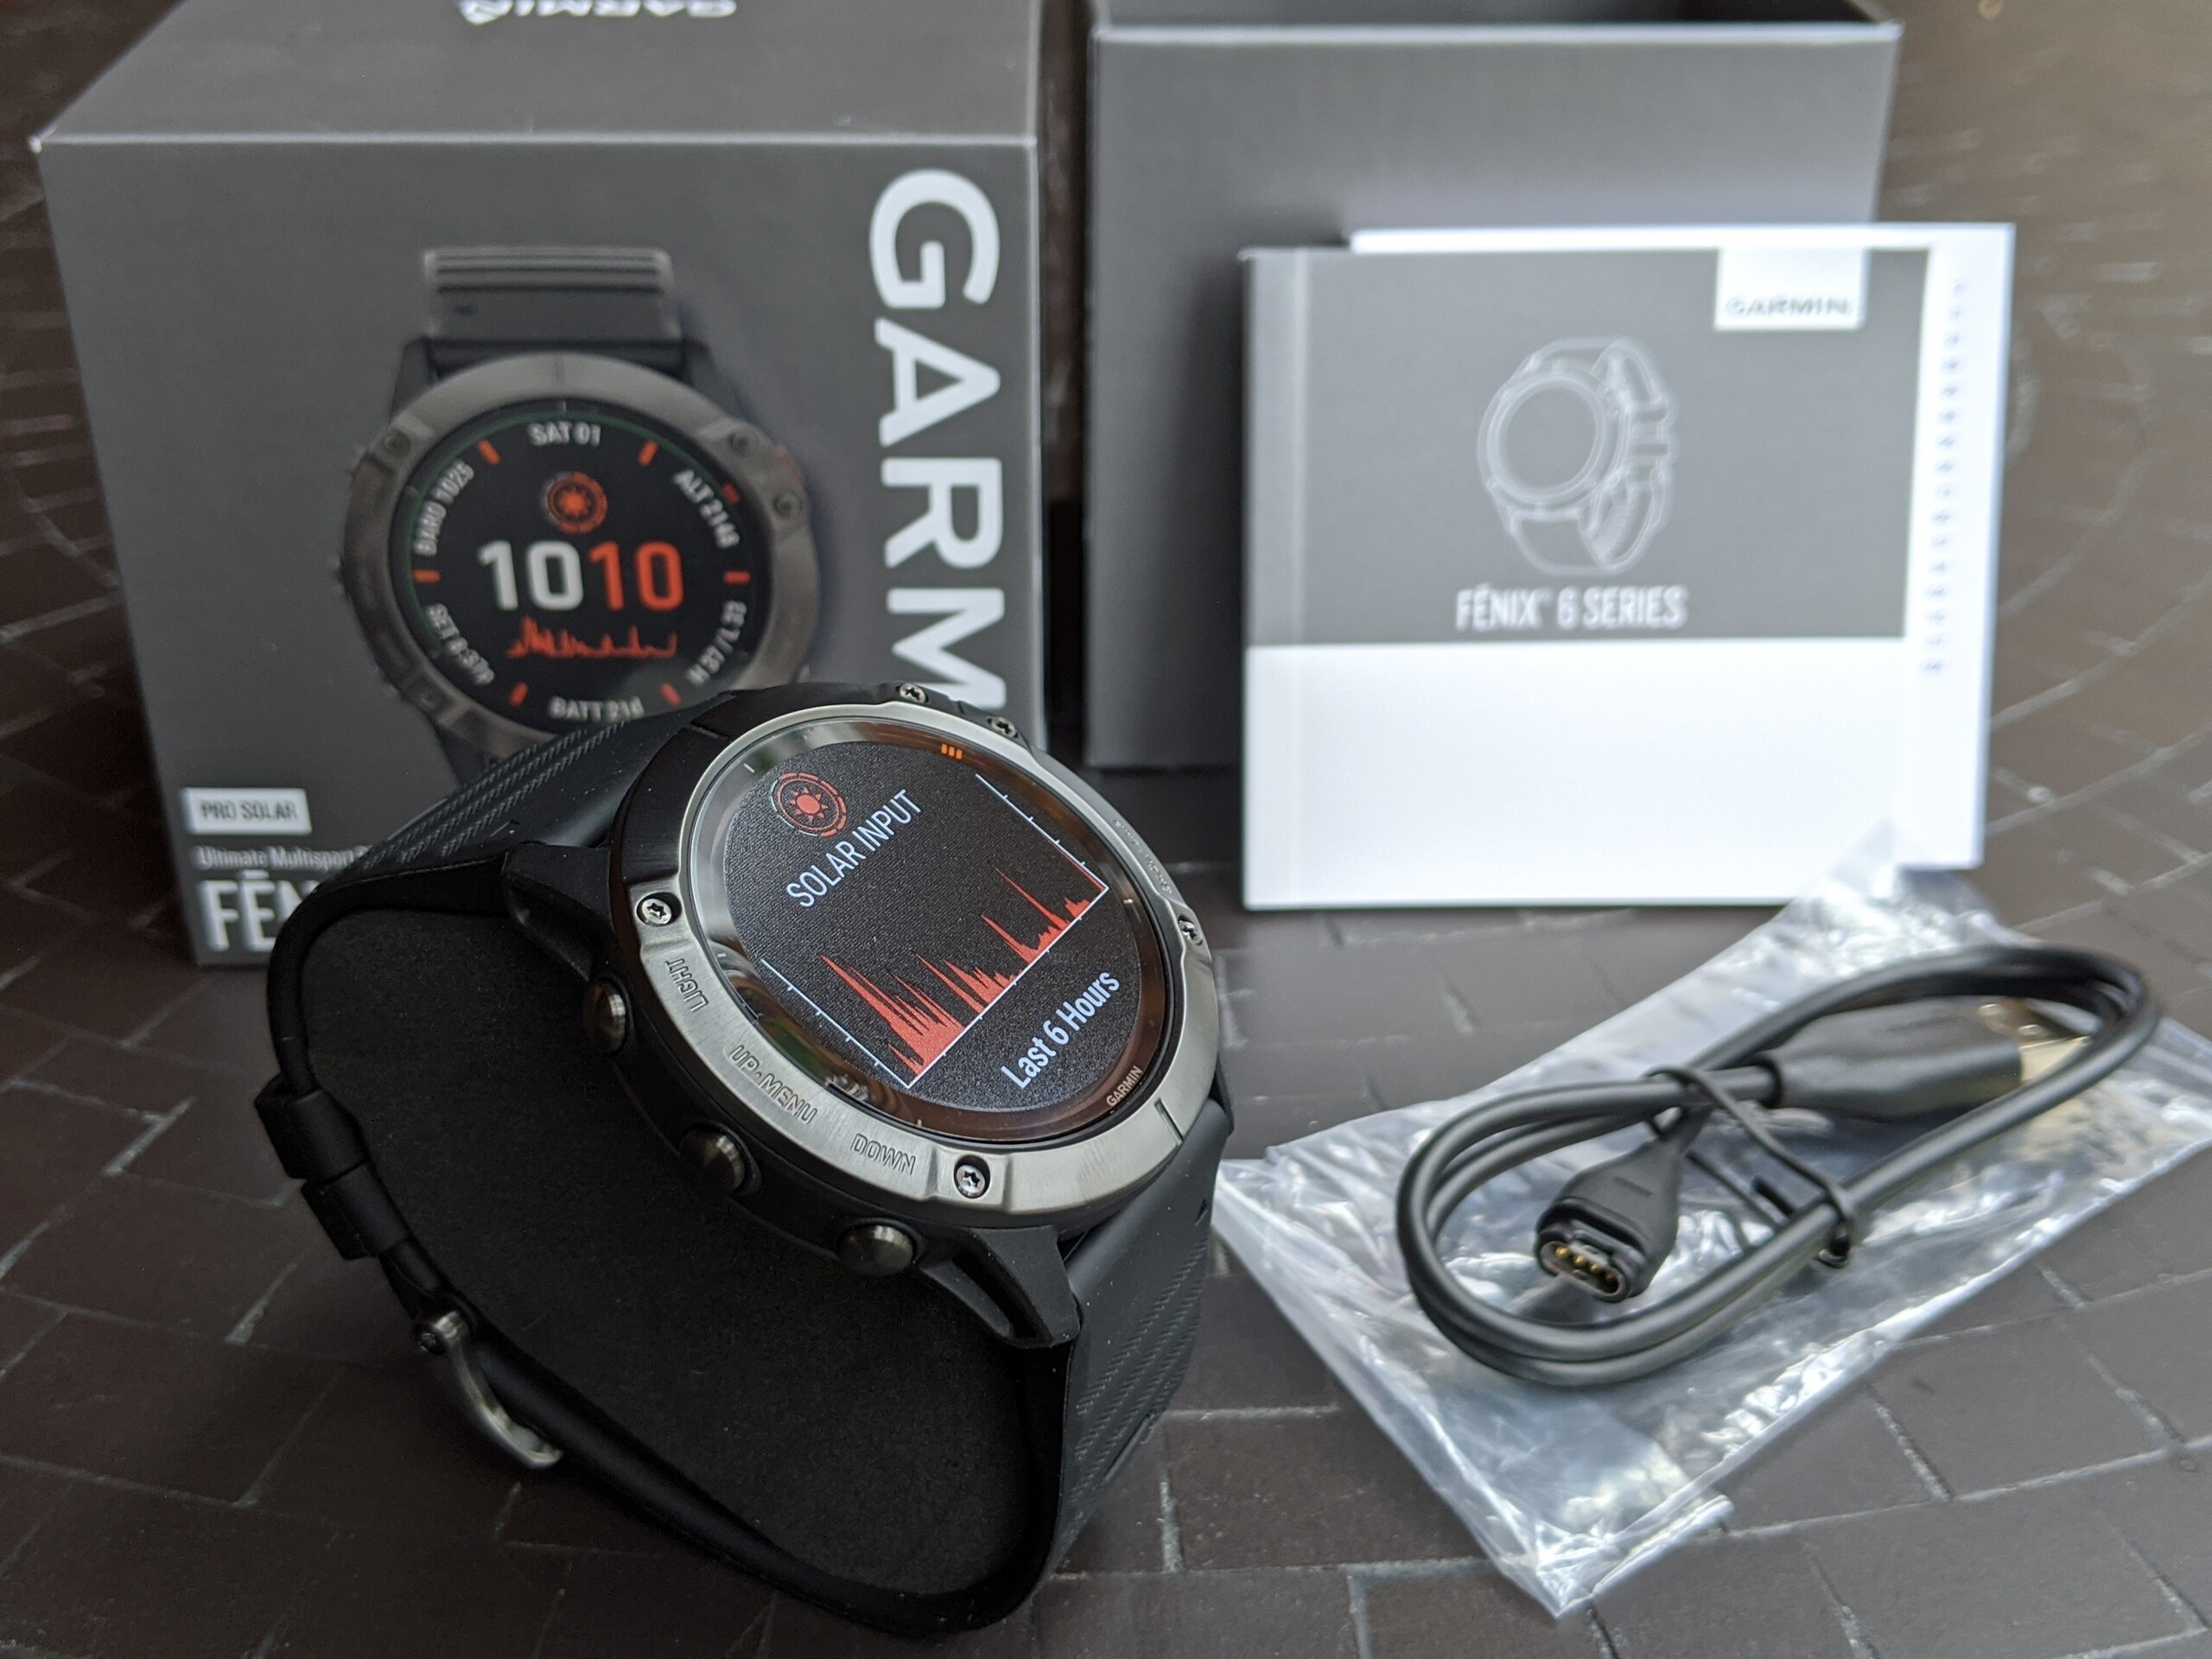 Review del Smartwatch Solar Fenix 6X Pro de Garmin - reloj deportivo y navegador satelital fuera línea uno - Notebookcheck.org